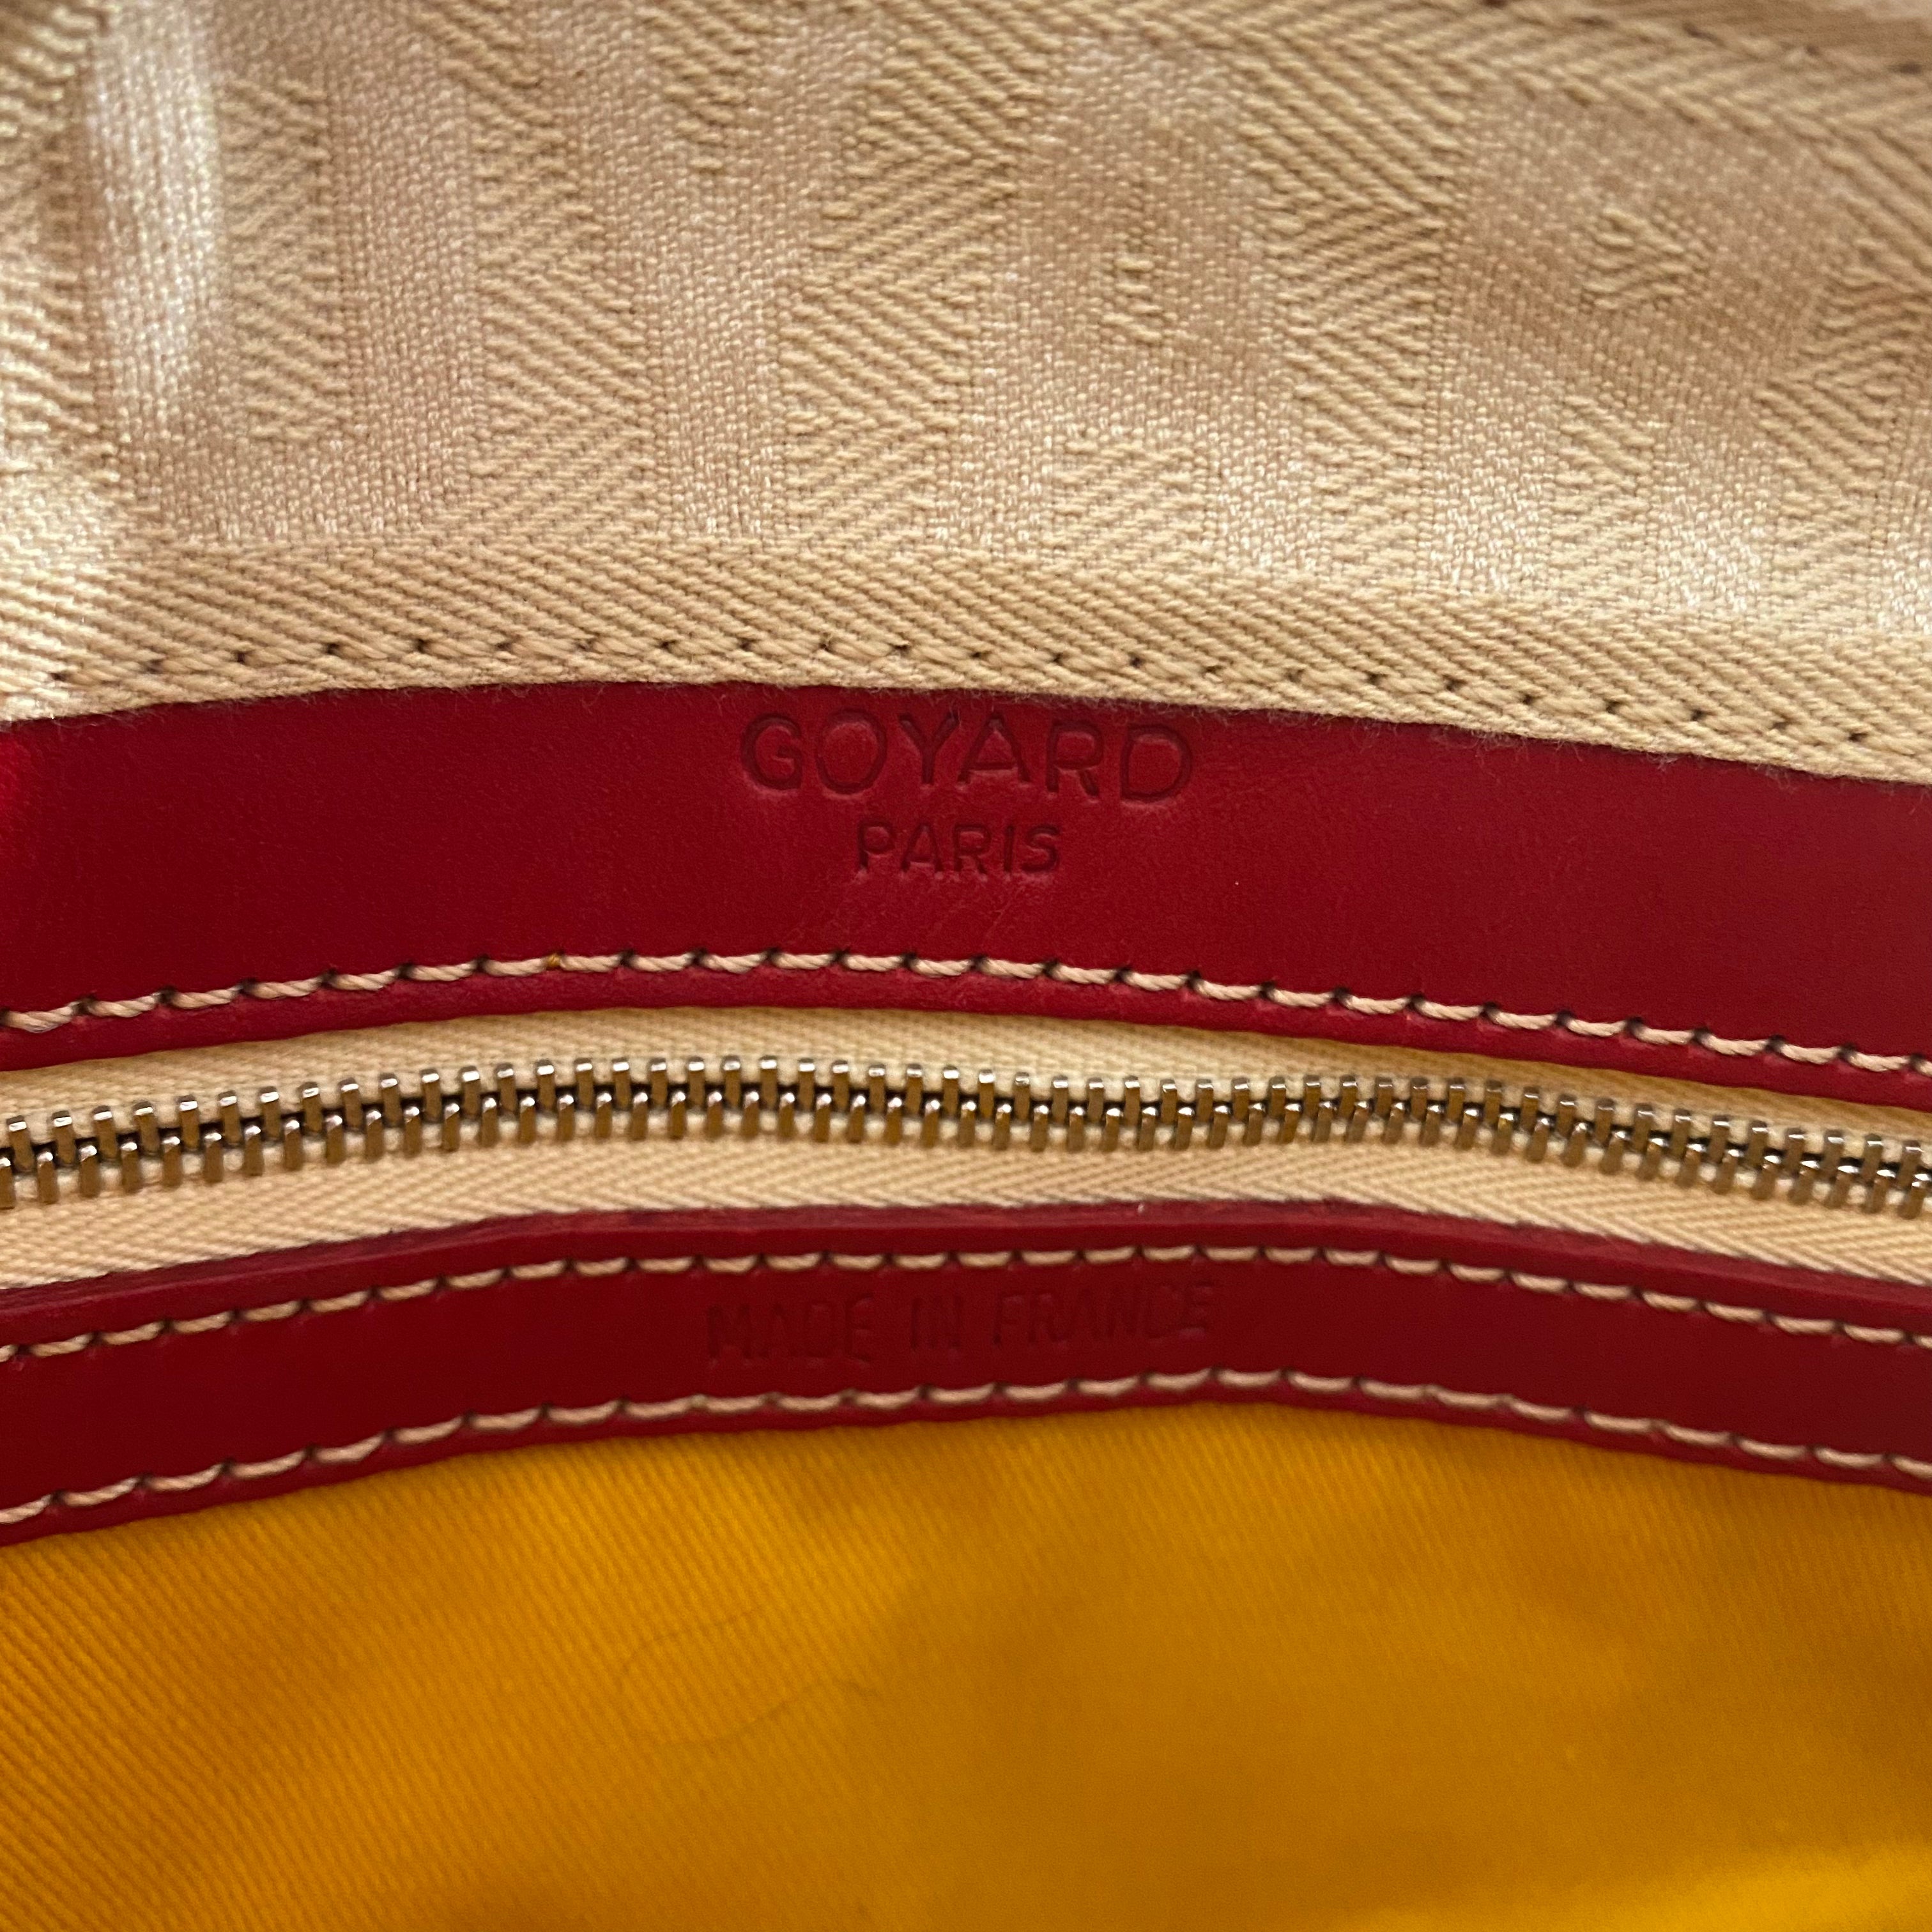 Goyard Red Goyardine Canvas Leather Croisiere 35cm Duffle Bag